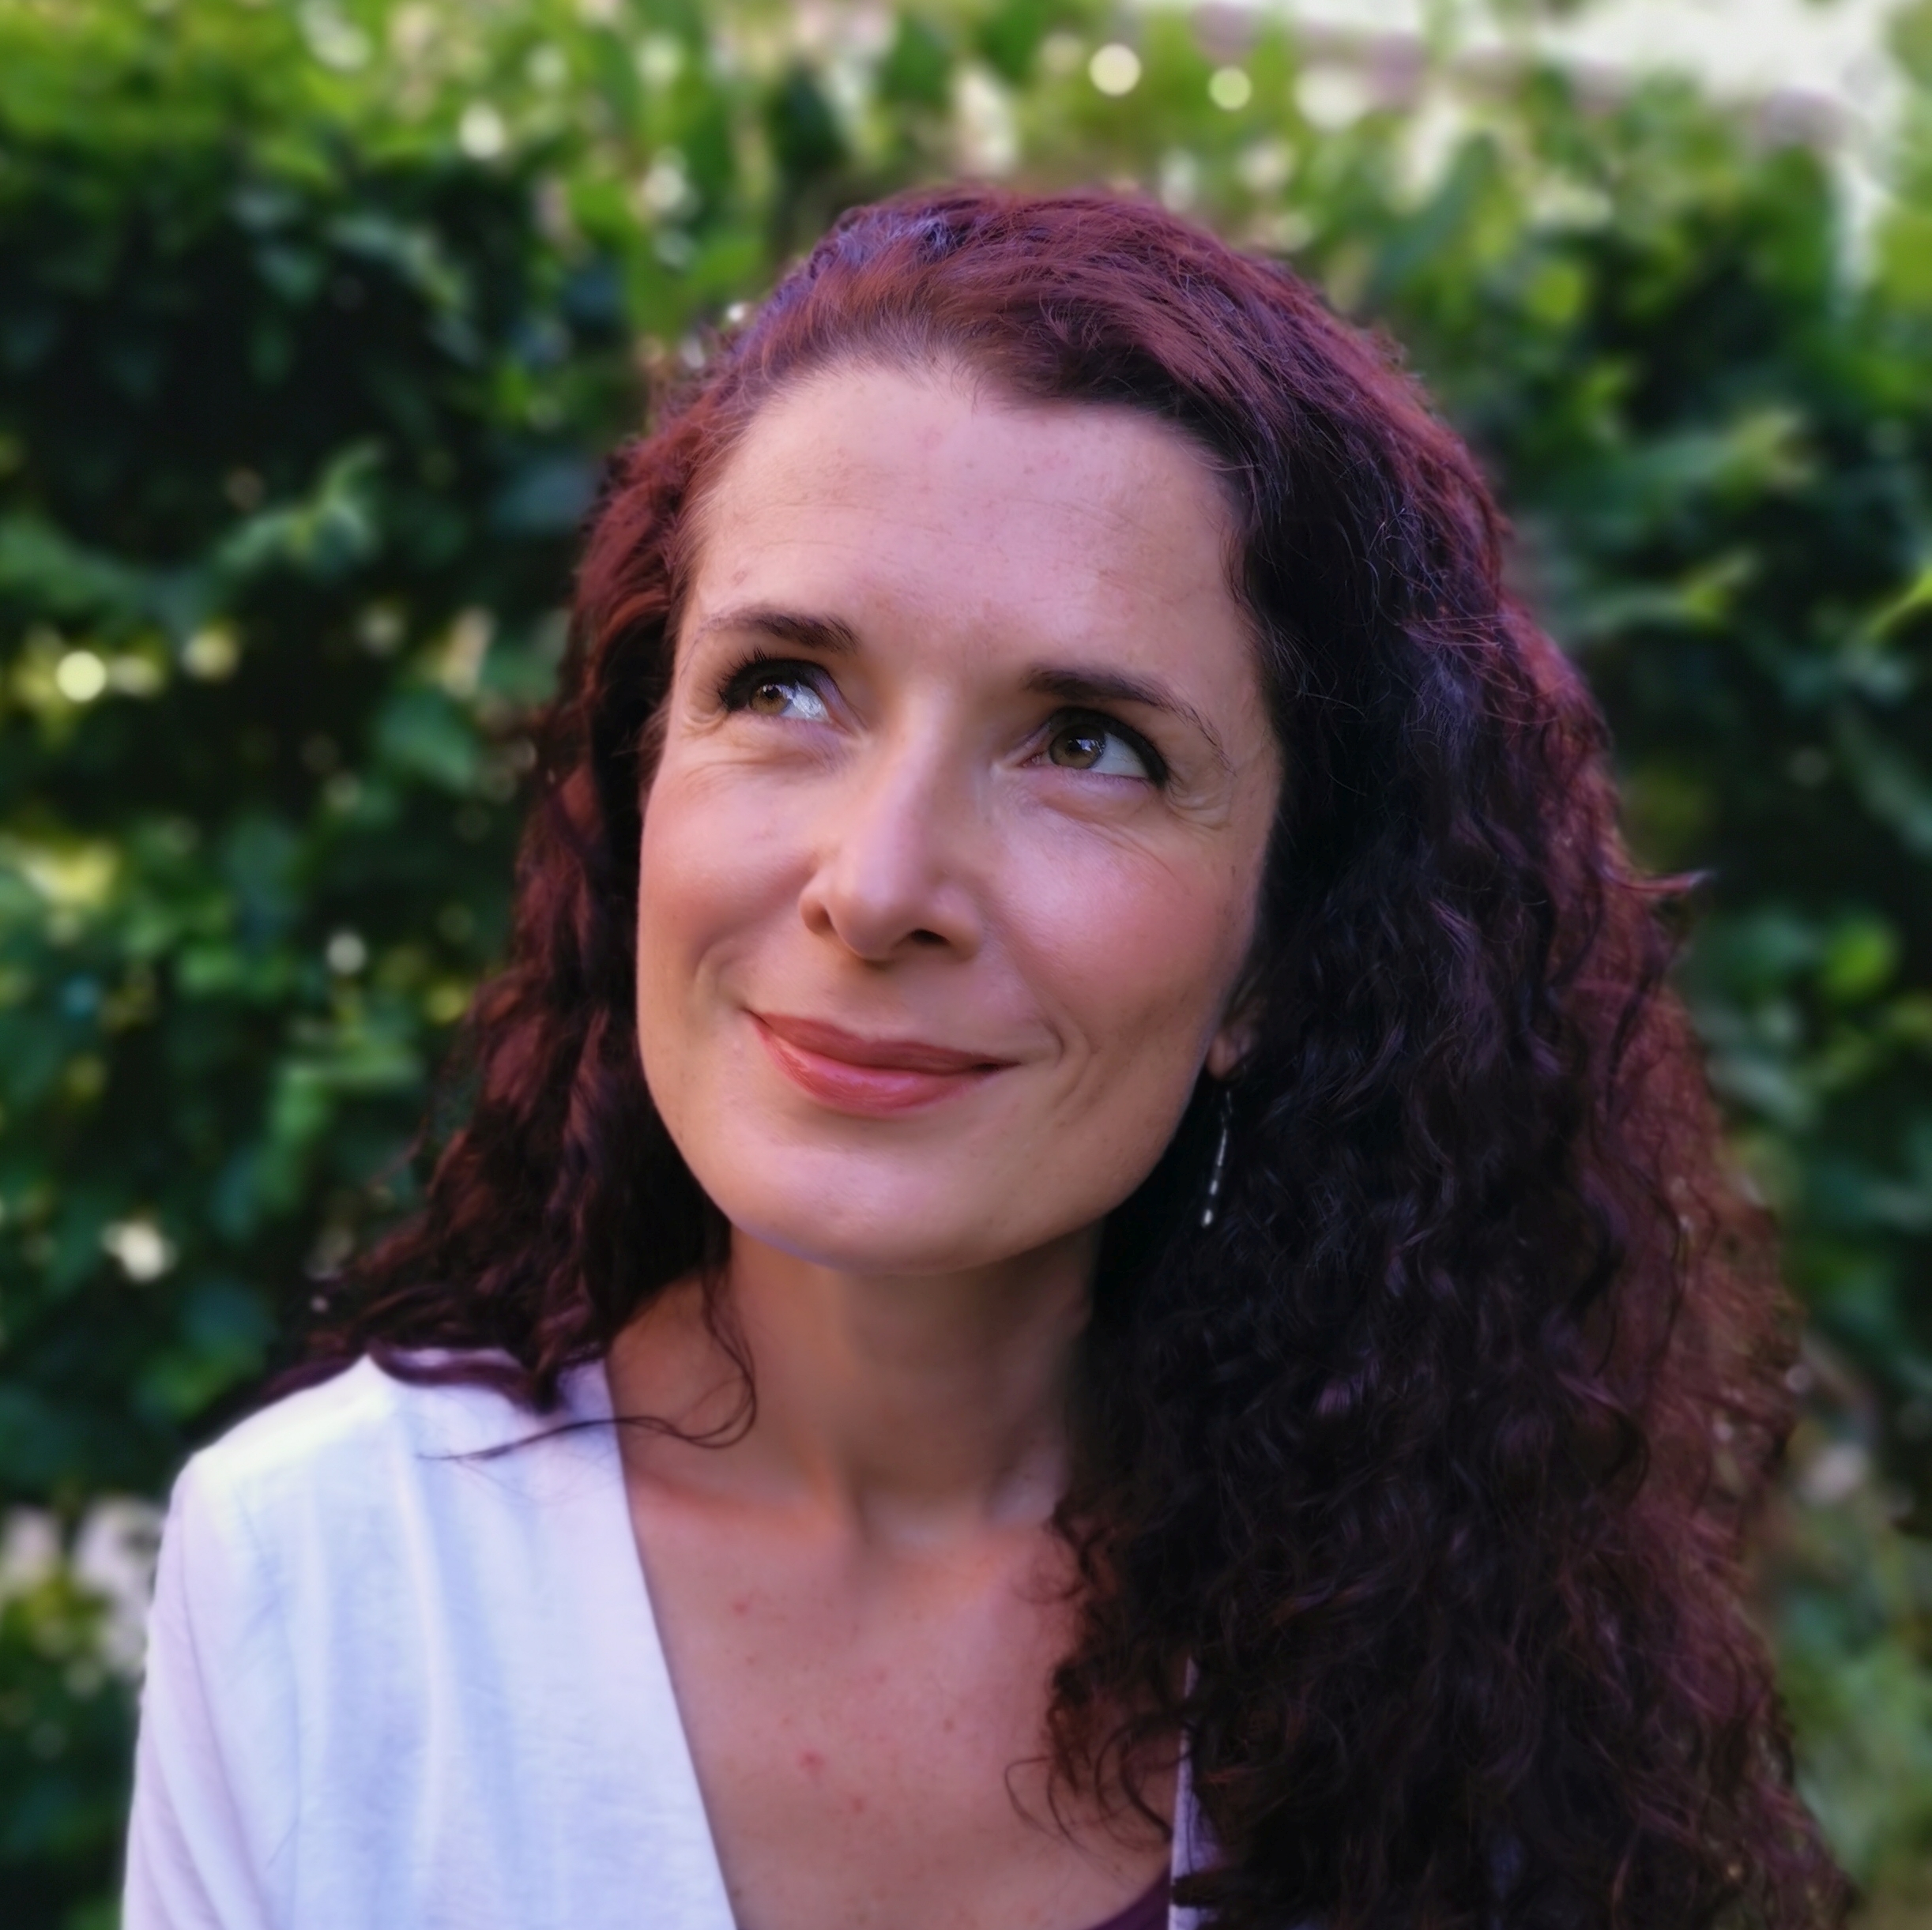 Portraitfoto von Diversity-Autorin und Verlegerin Karin Beese, lächelnd vor einer grünen Hecke mit Blick nach oben